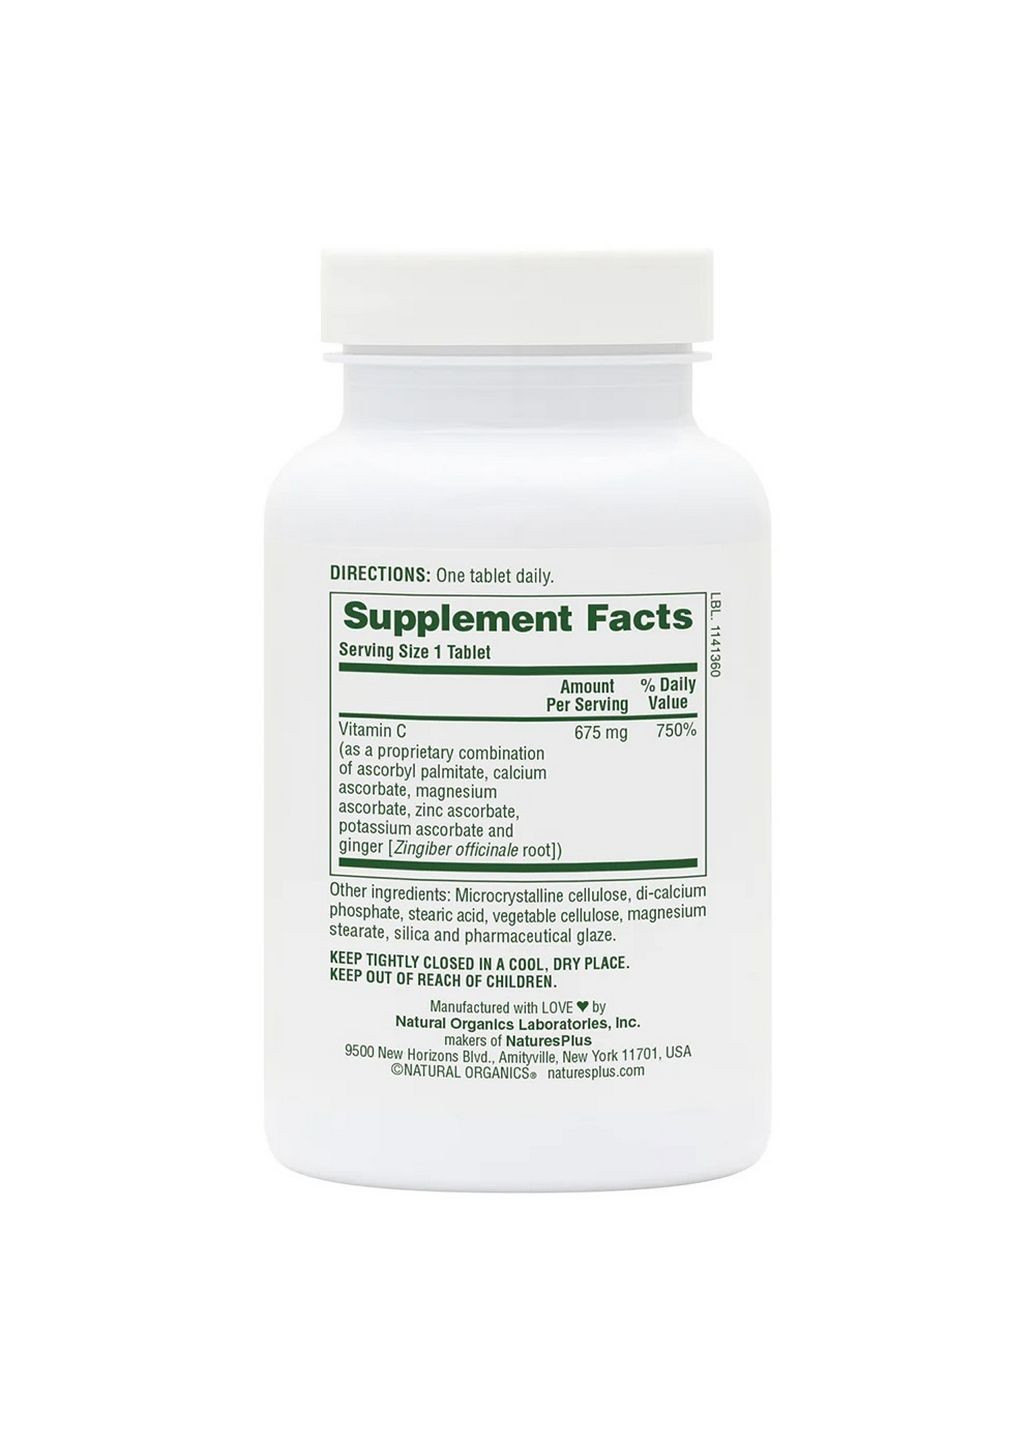 Вітаміни та мінерали Esterified Vitamin C, 90 таблеток Natures Plus (293339136)